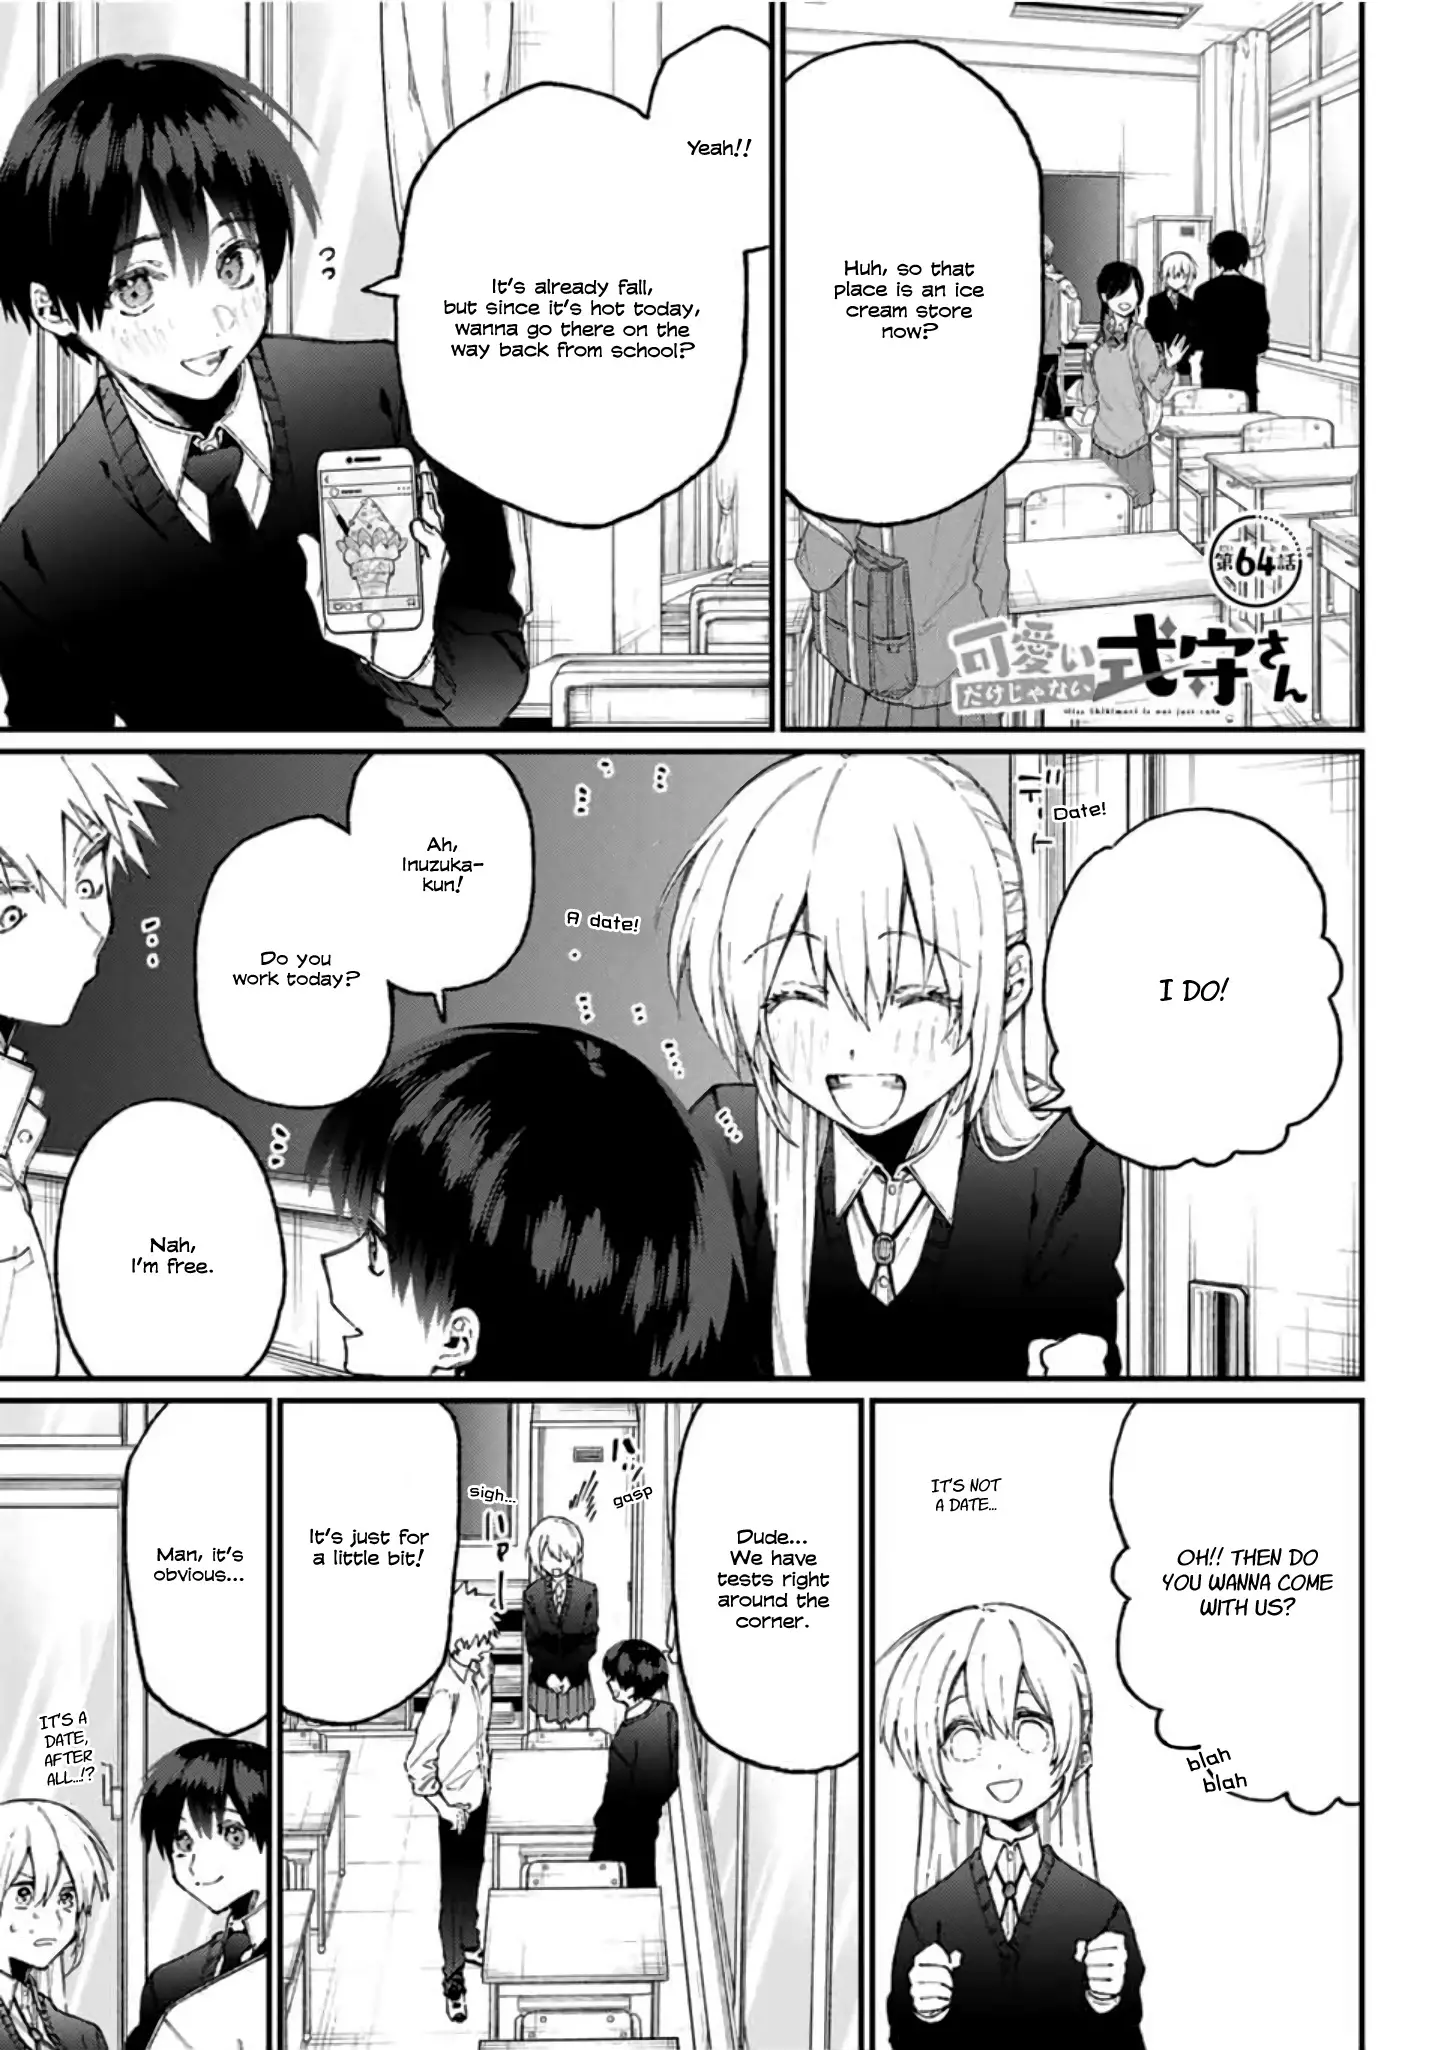 Shikimori's Not Just A Cutie - 64 page 1